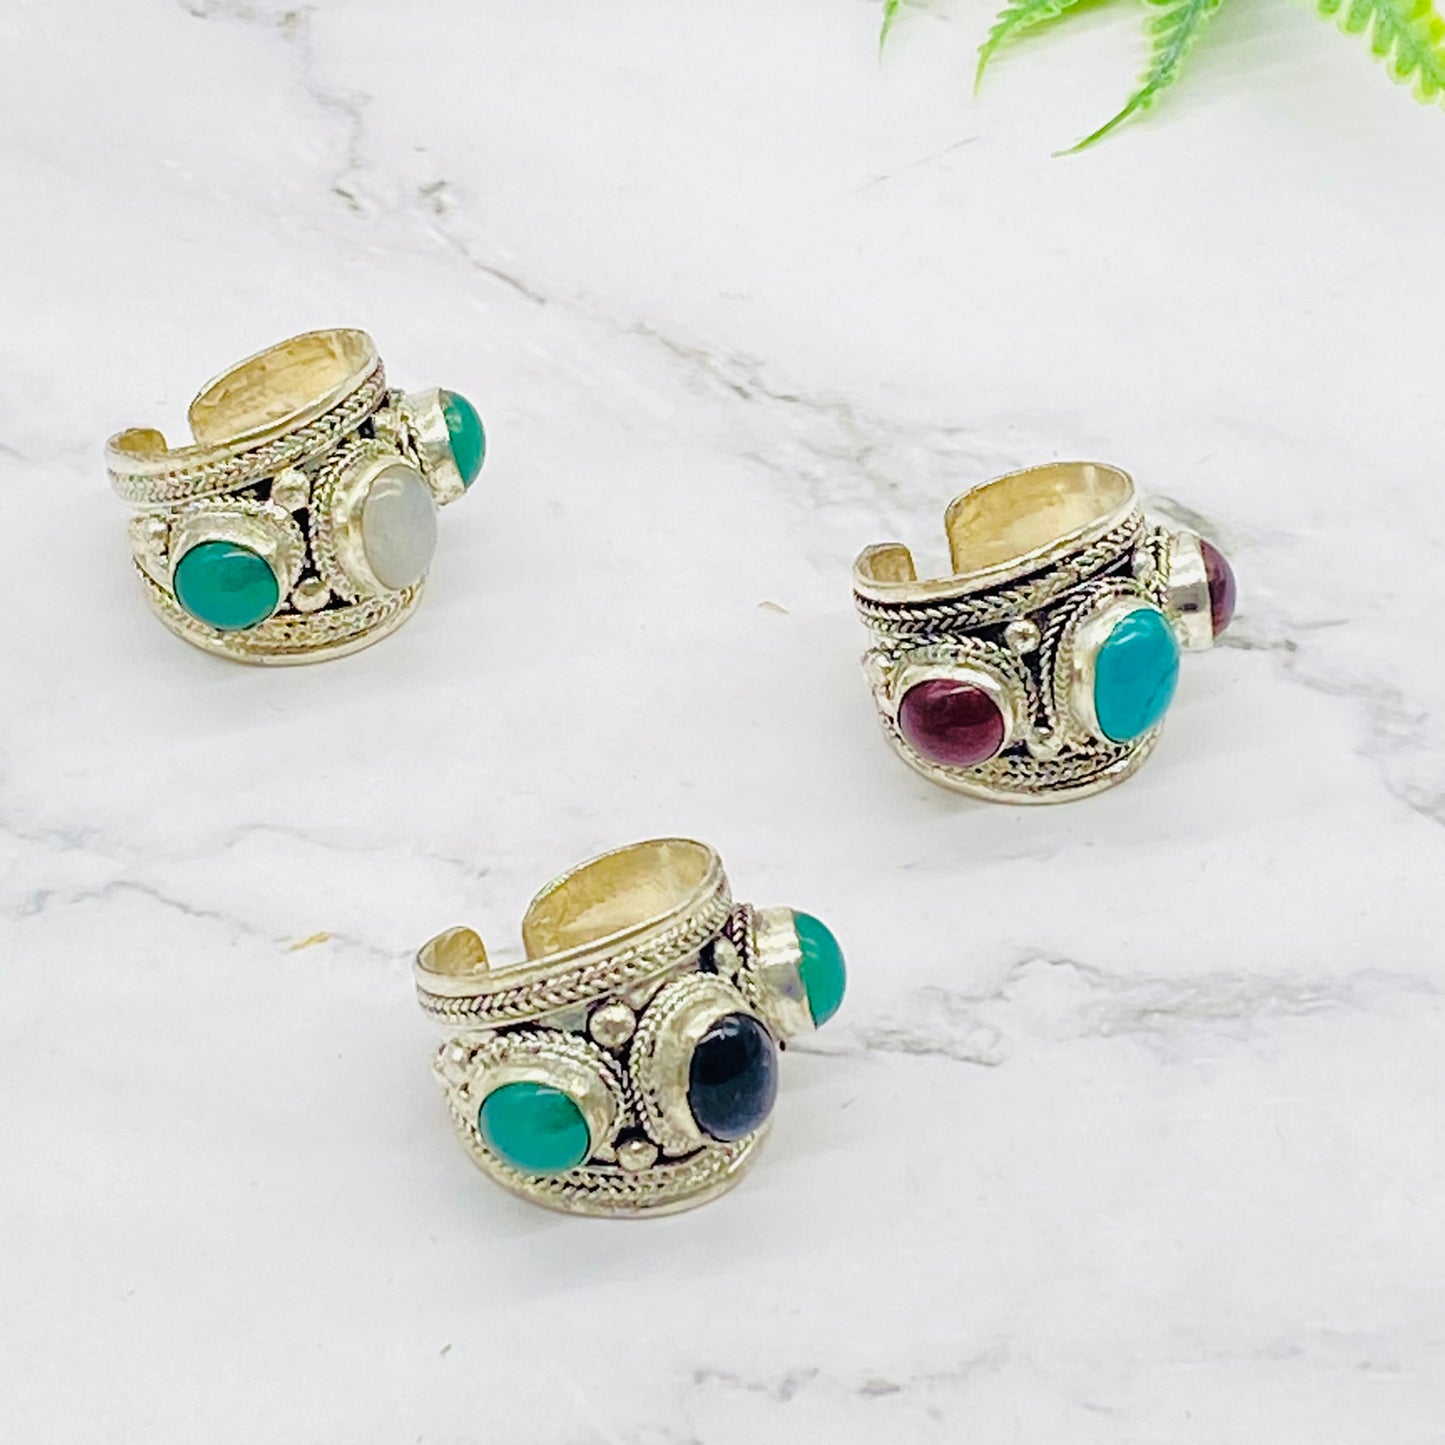 Multistone Stackable Rings, Handmade Jewelry, Crystal Rings, Vintage Style Rings, Adjustable Gemstone Rings, Unisex Statement Rings